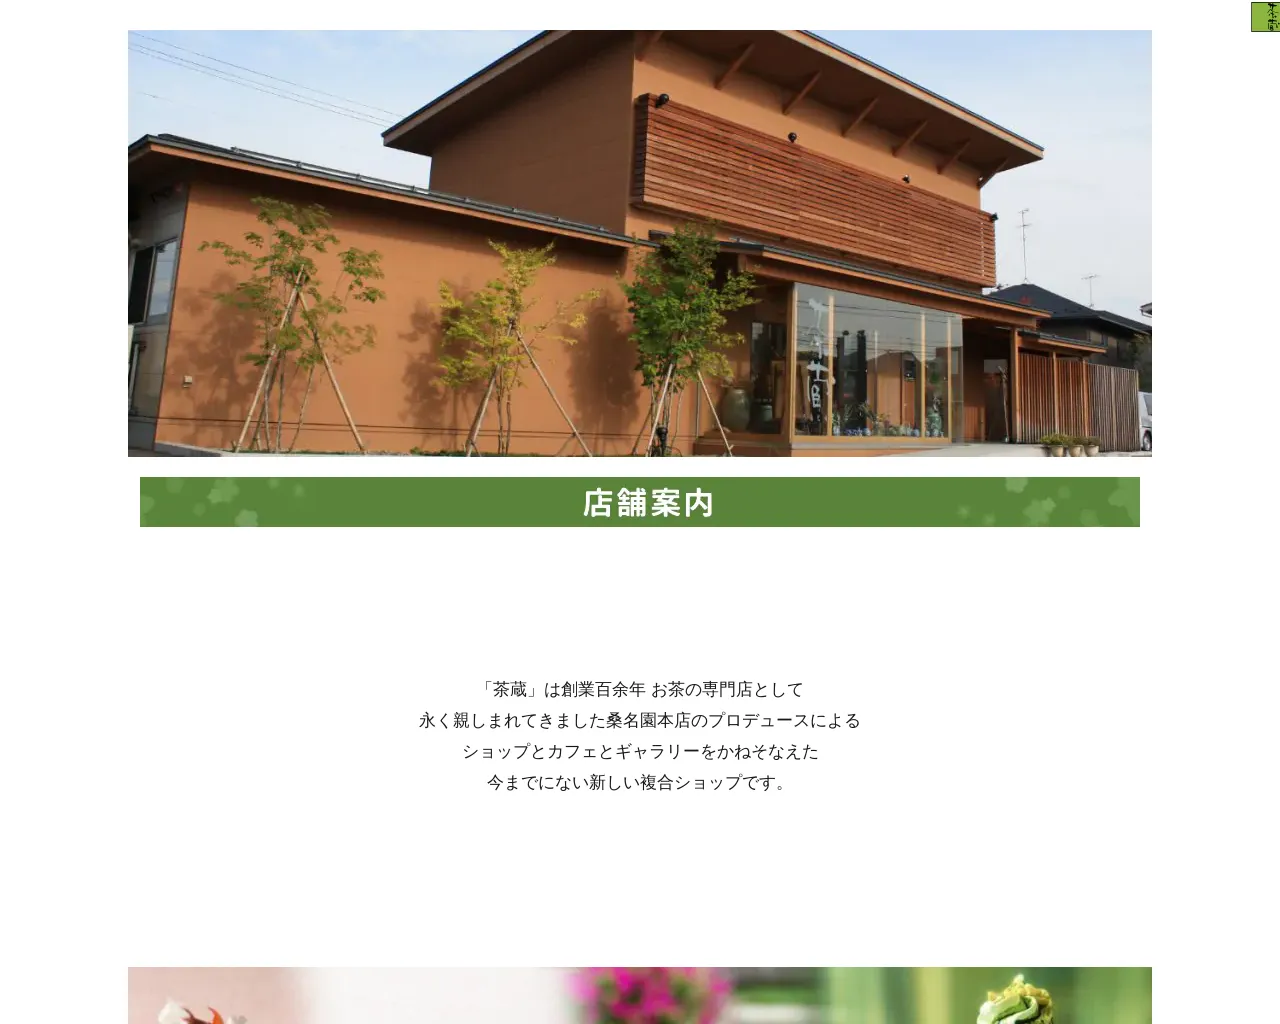 茶蔵 イオン米沢店 site